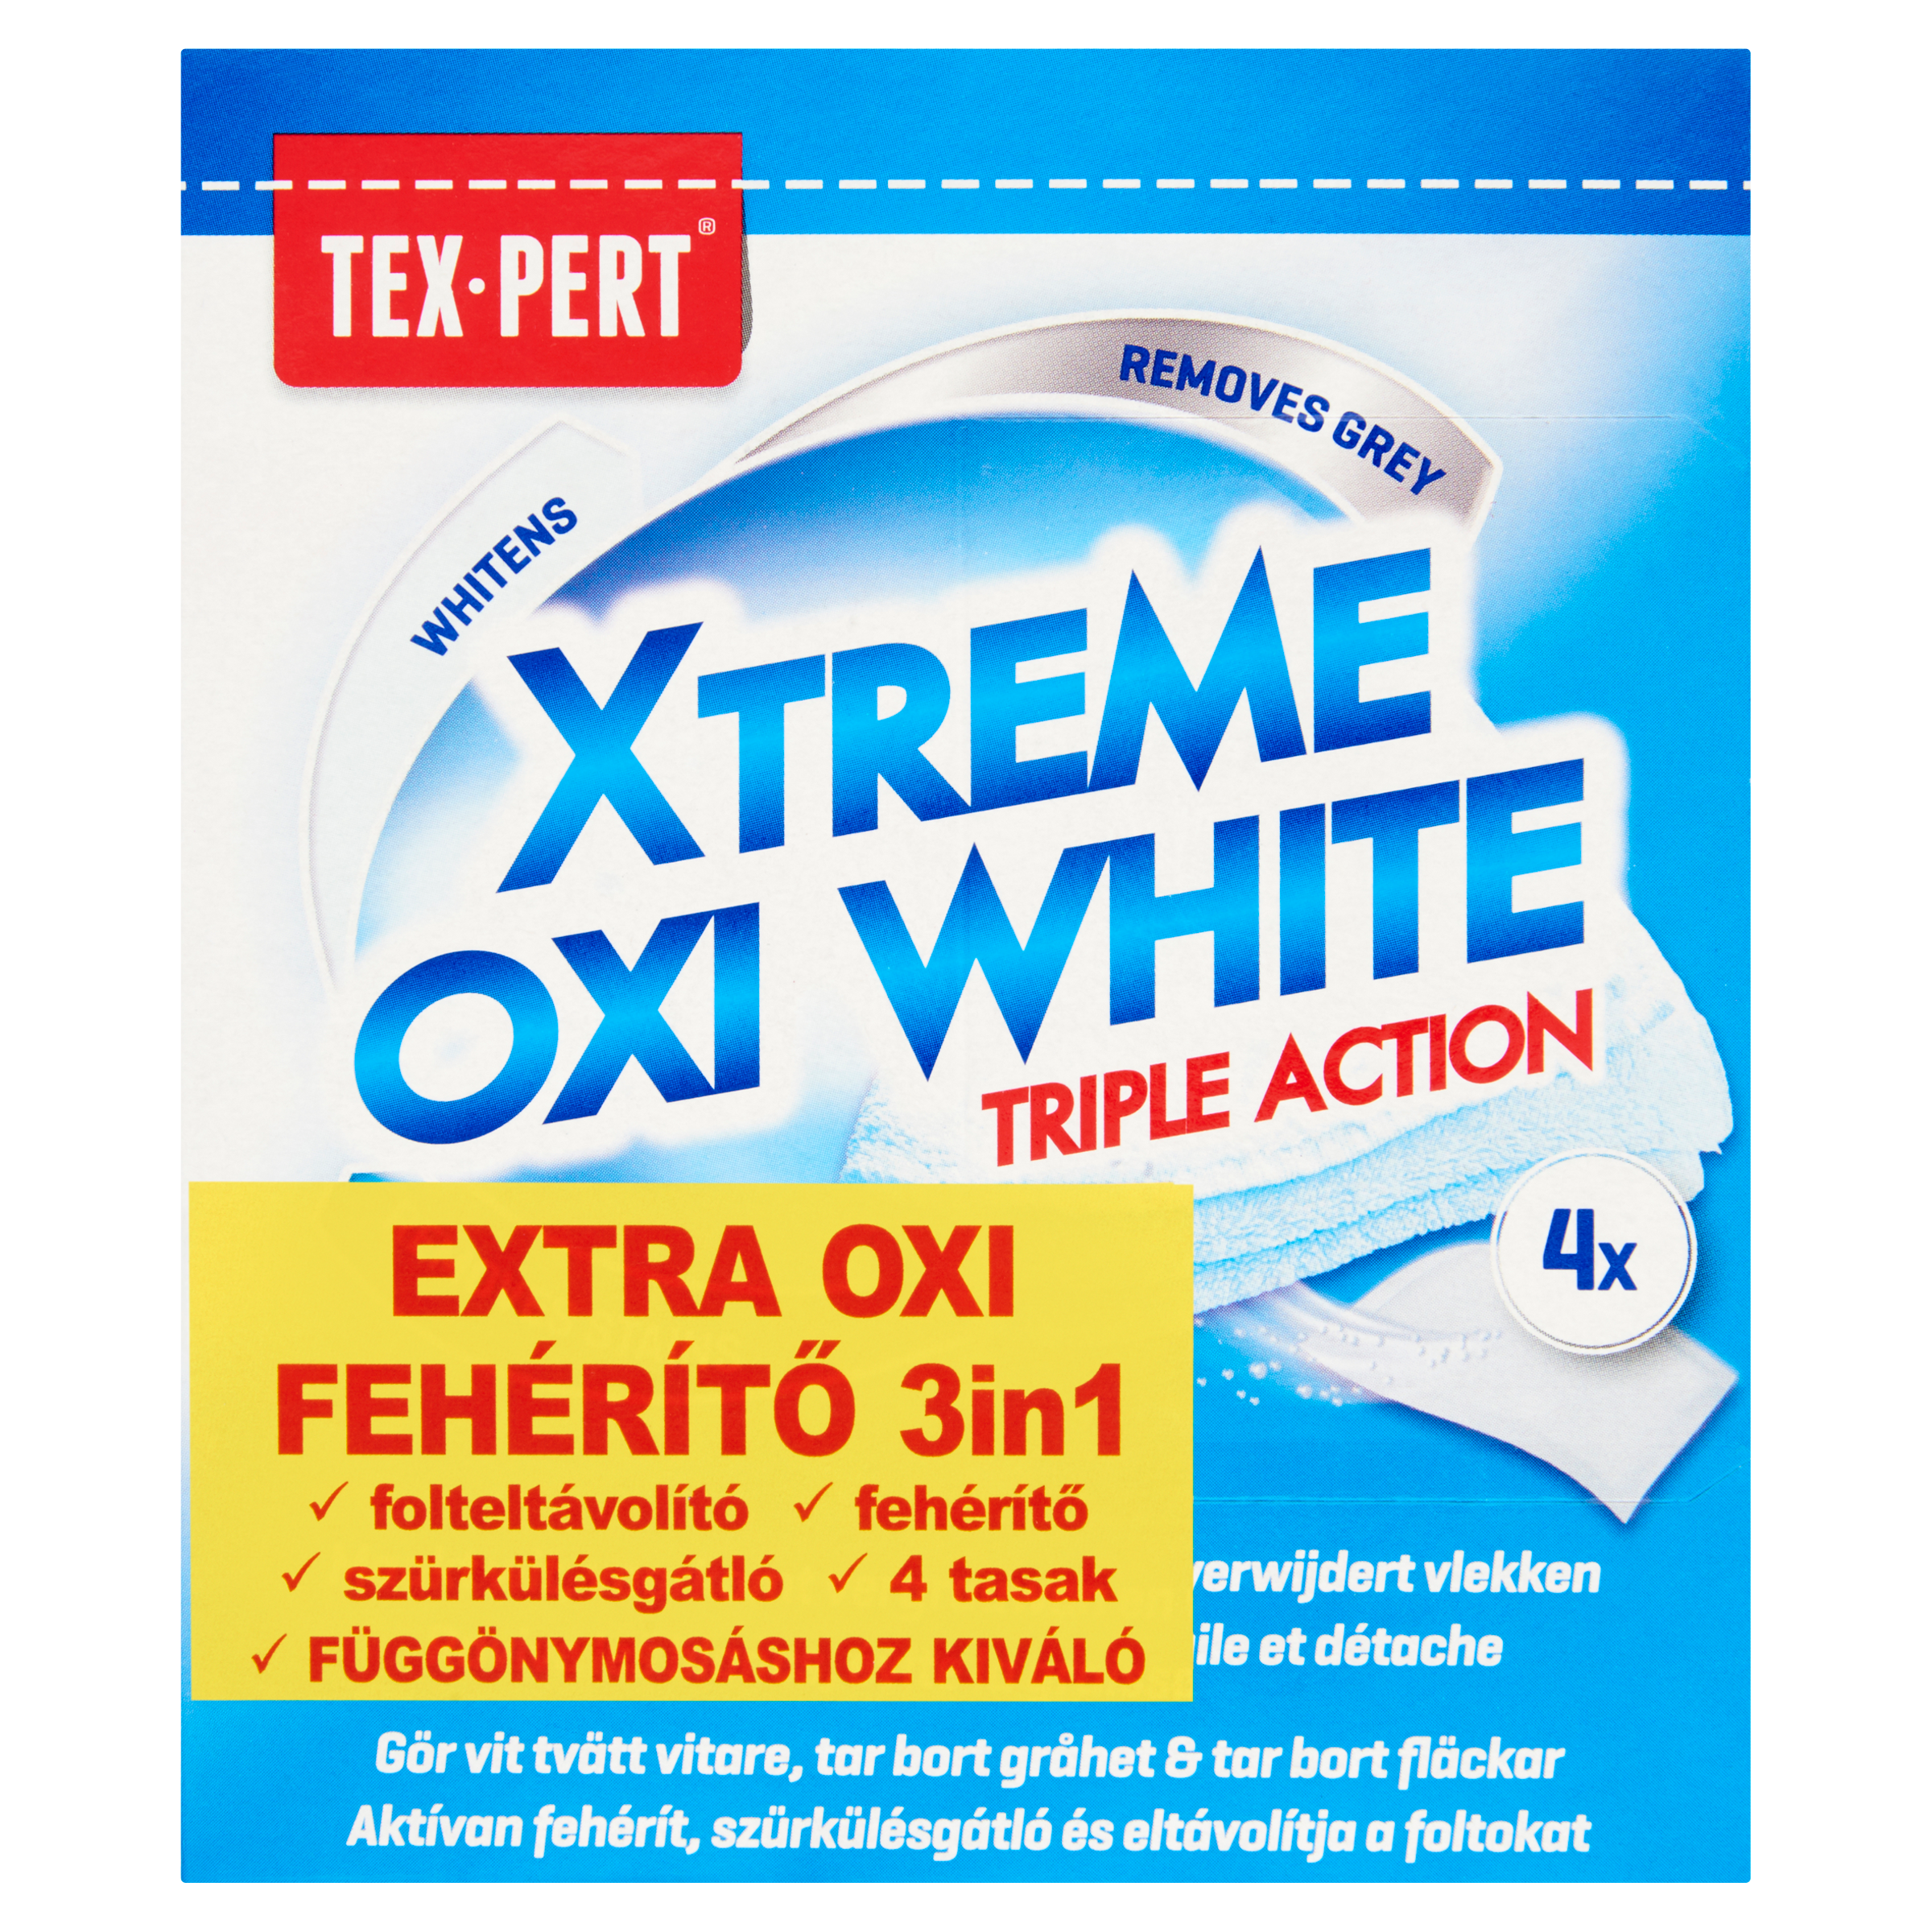 Tex-pert Extra Oxi fehérítő 3in1 4 db